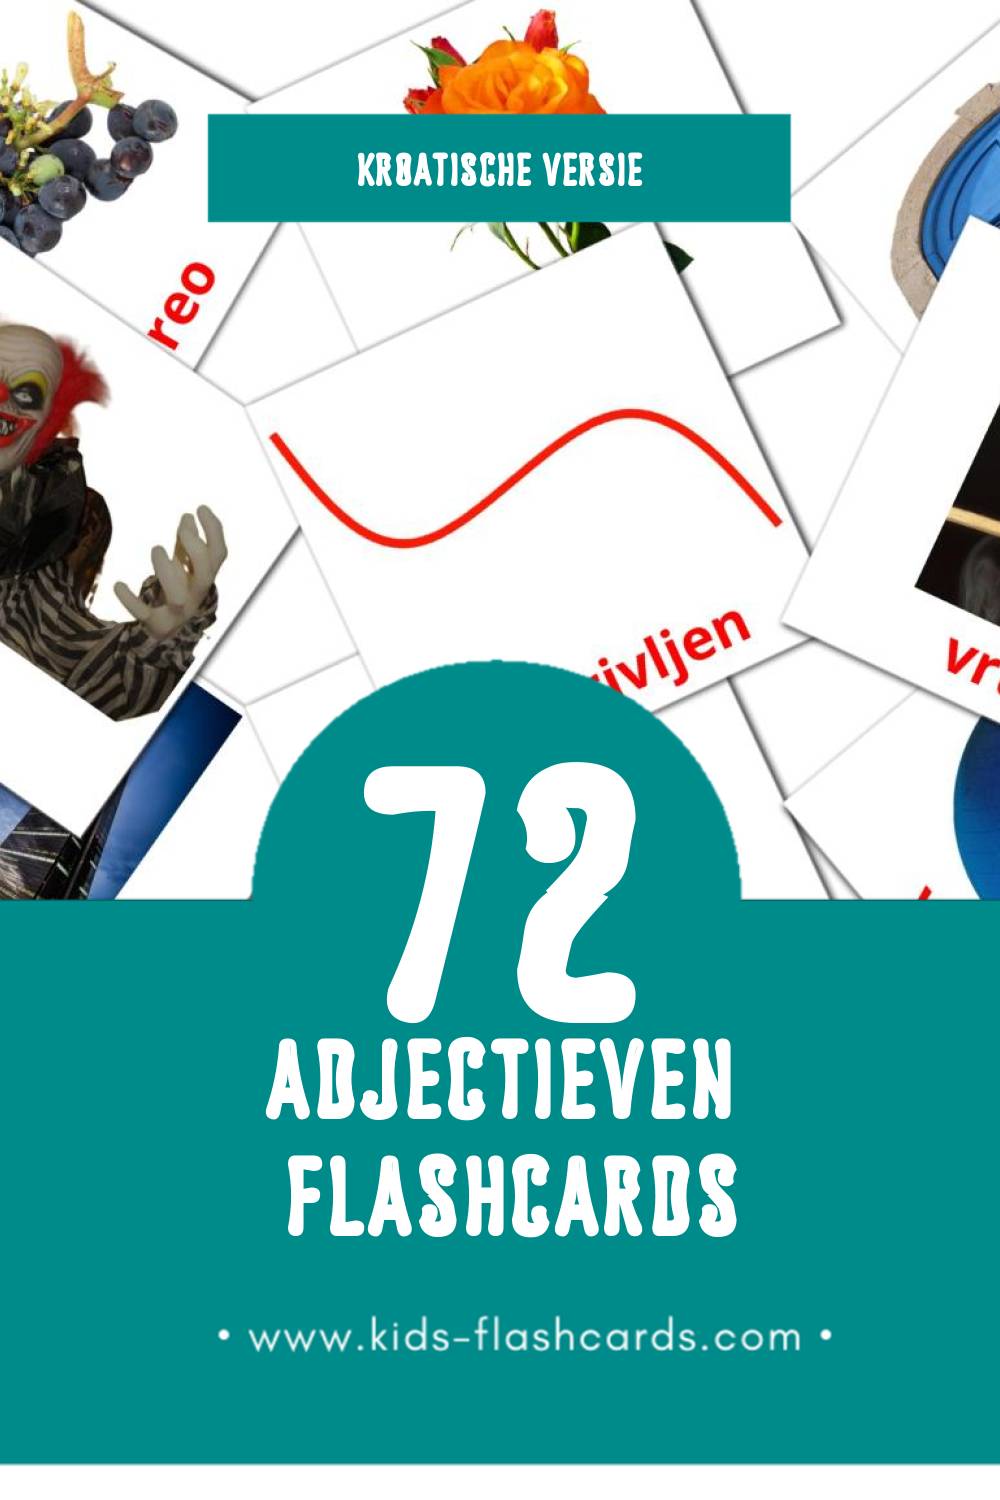 Visuele Pridjevi Flashcards voor Kleuters (72 kaarten in het Kroatisch)